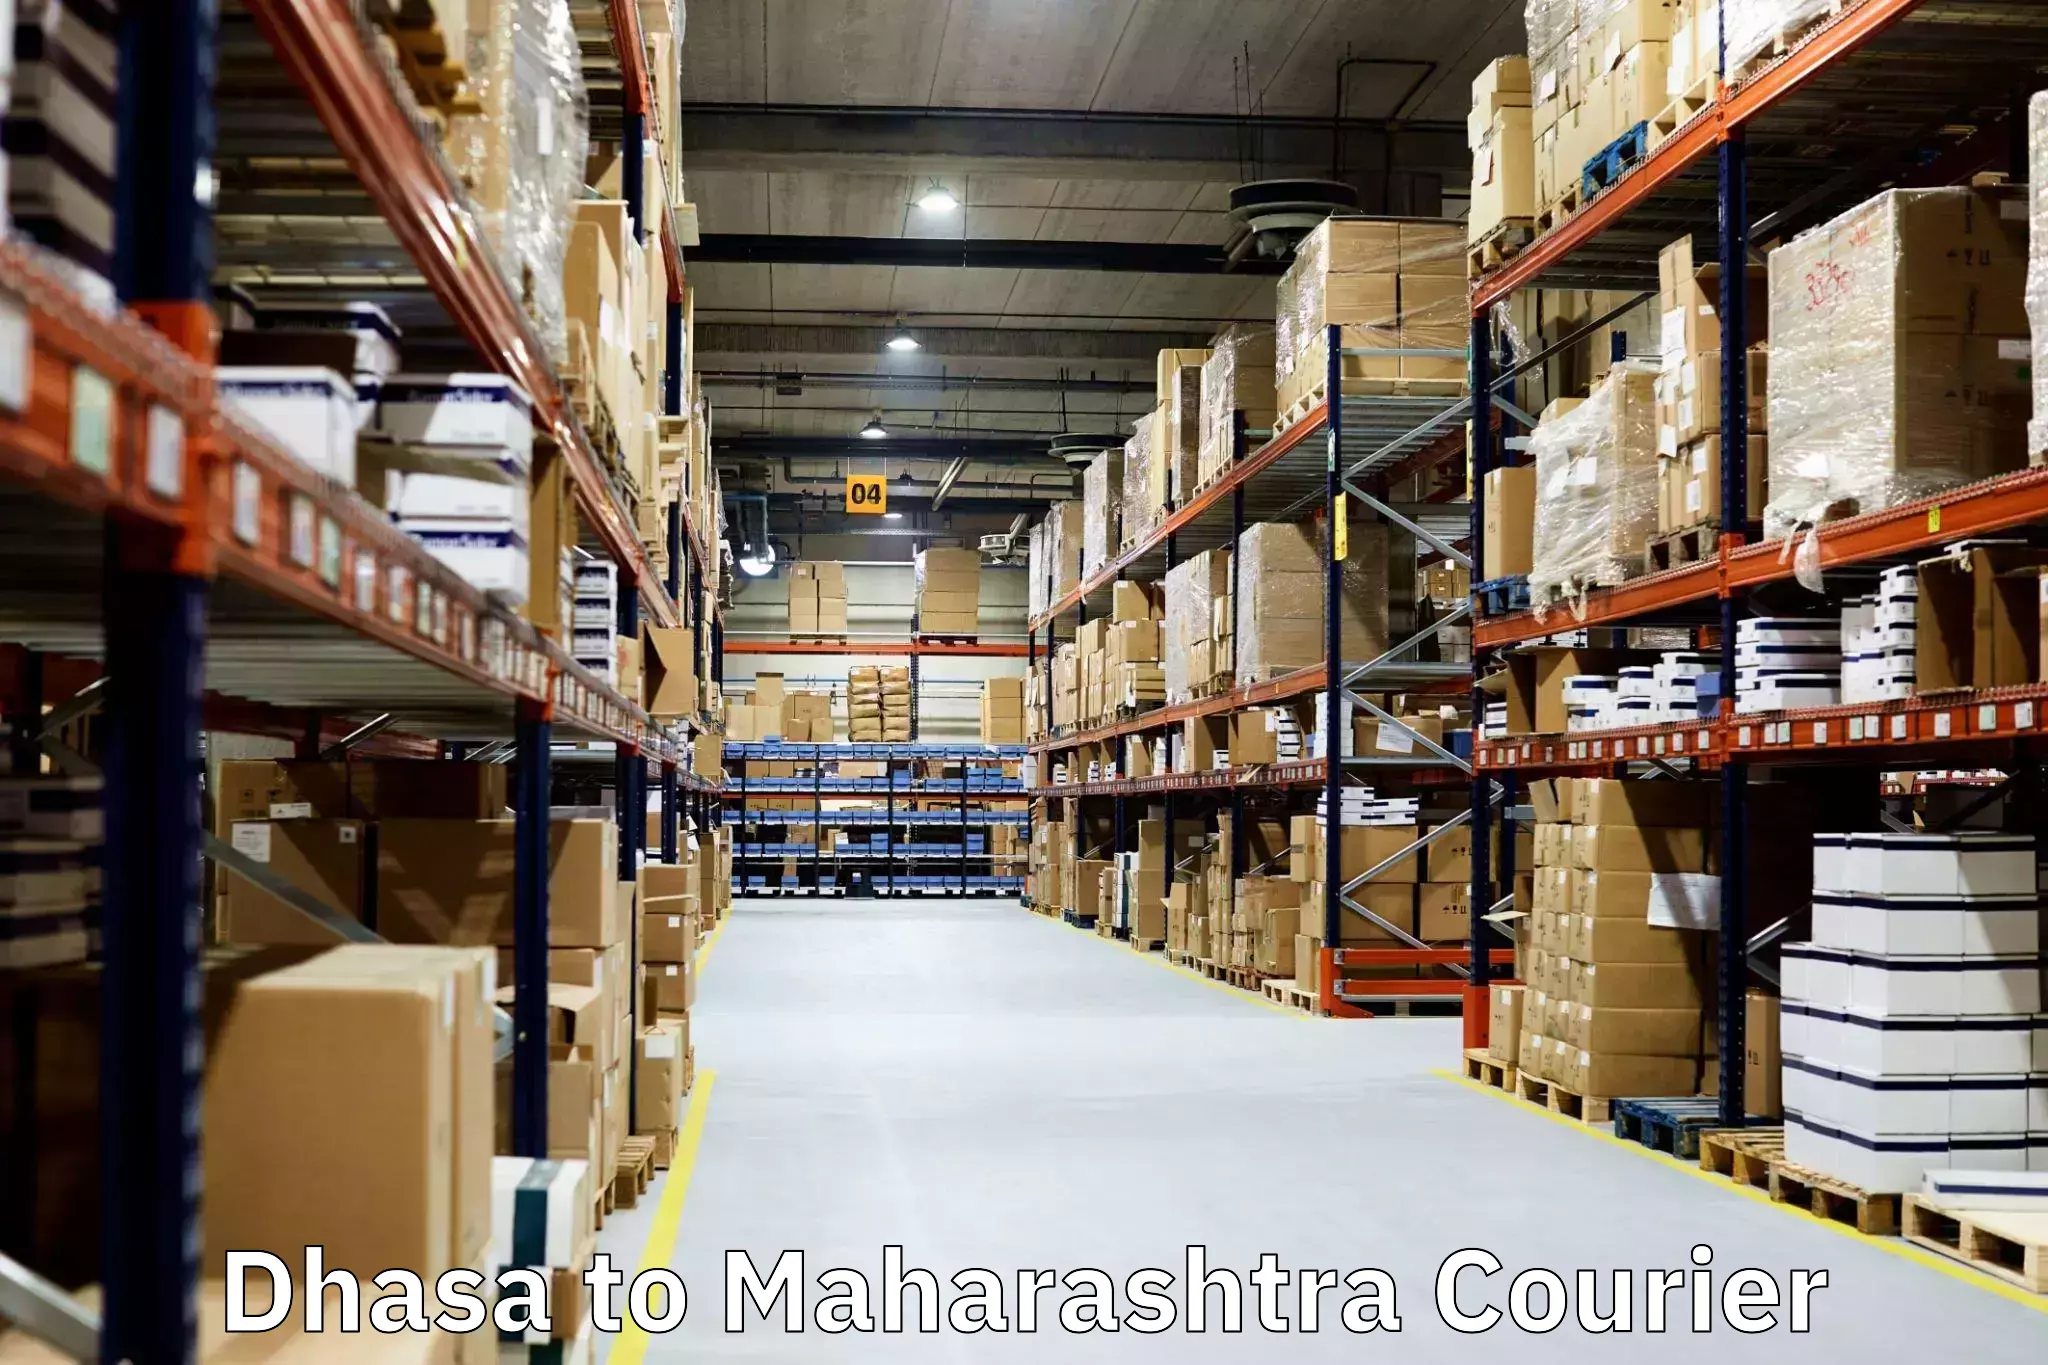 Home shifting experts Dhasa to Maharashtra